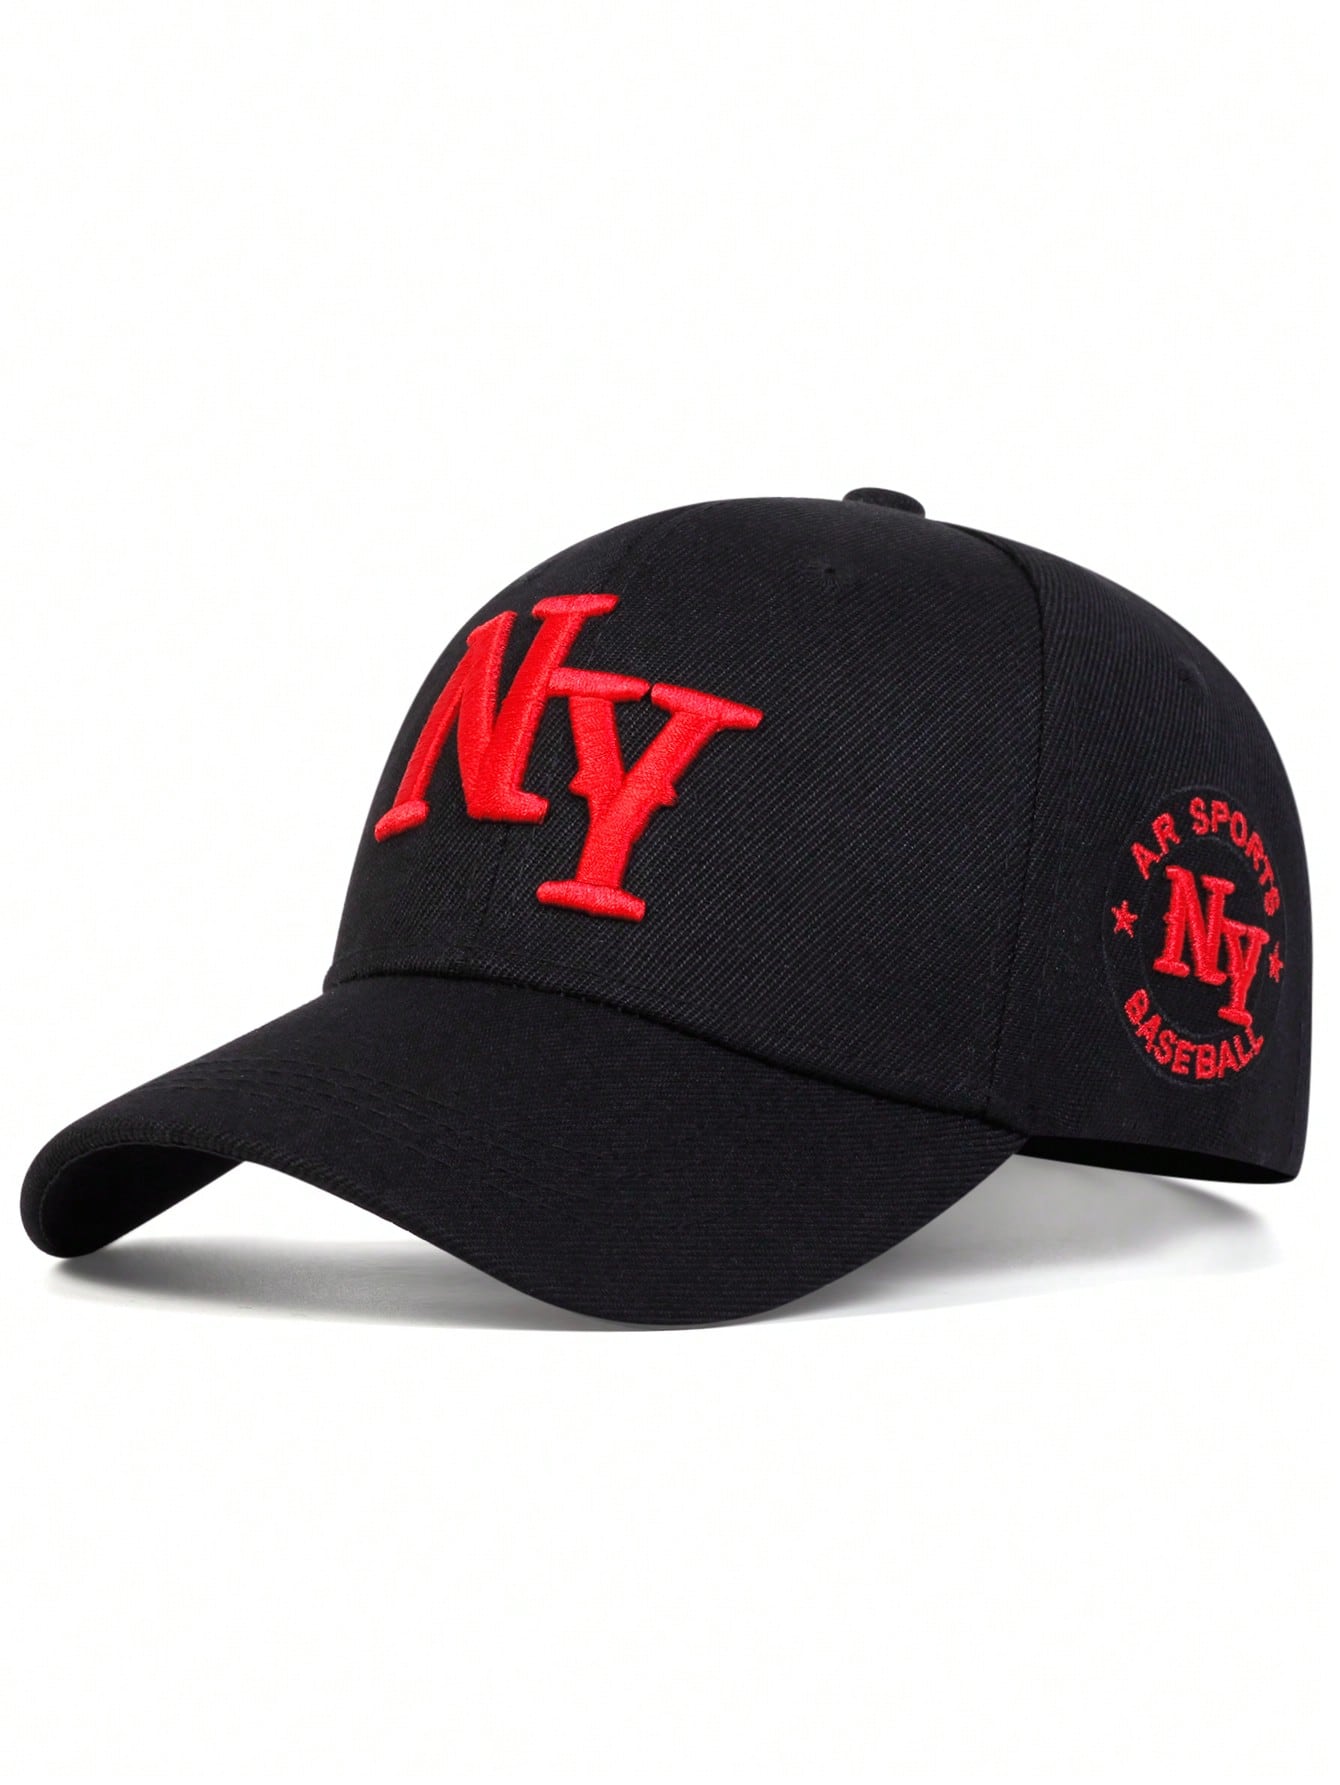 1 шт. мужская бейсболка с вышивкой букв «Нью-Йорк», черный бейсболка 776794 модная мужская и женская уличная кепка регулируемая от солнца модная роскошная повседневная бейсболка с логотипом новинка